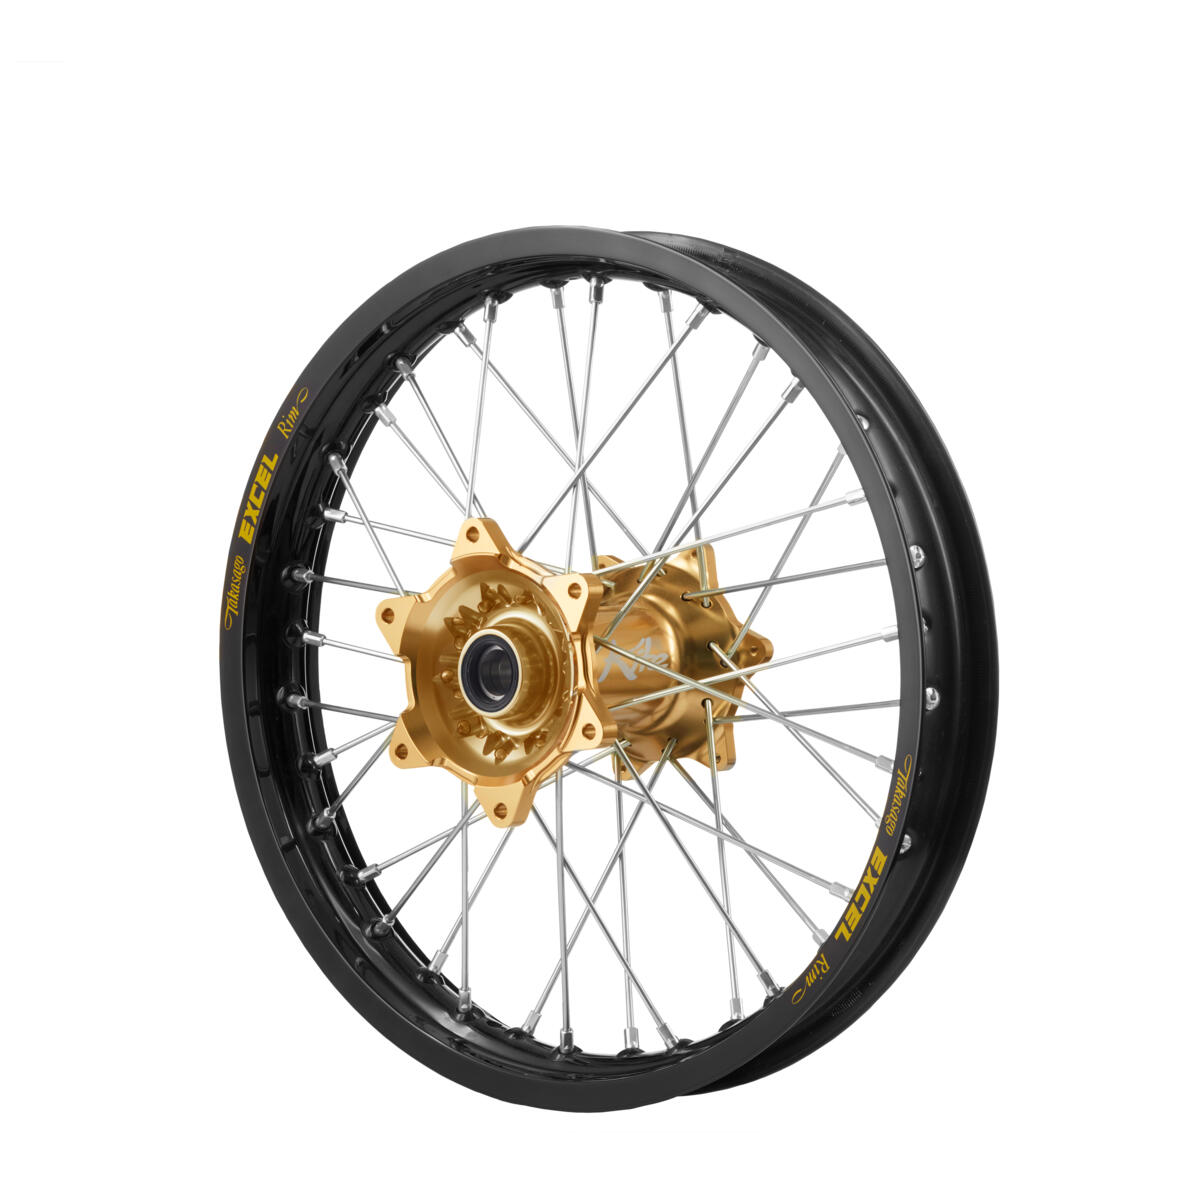 Rodas concebidas para campeões! Kit para roda traseira de elevada performance exclusivo idêntico ao utilizado pelas equipas Yamaha Factory Racing.